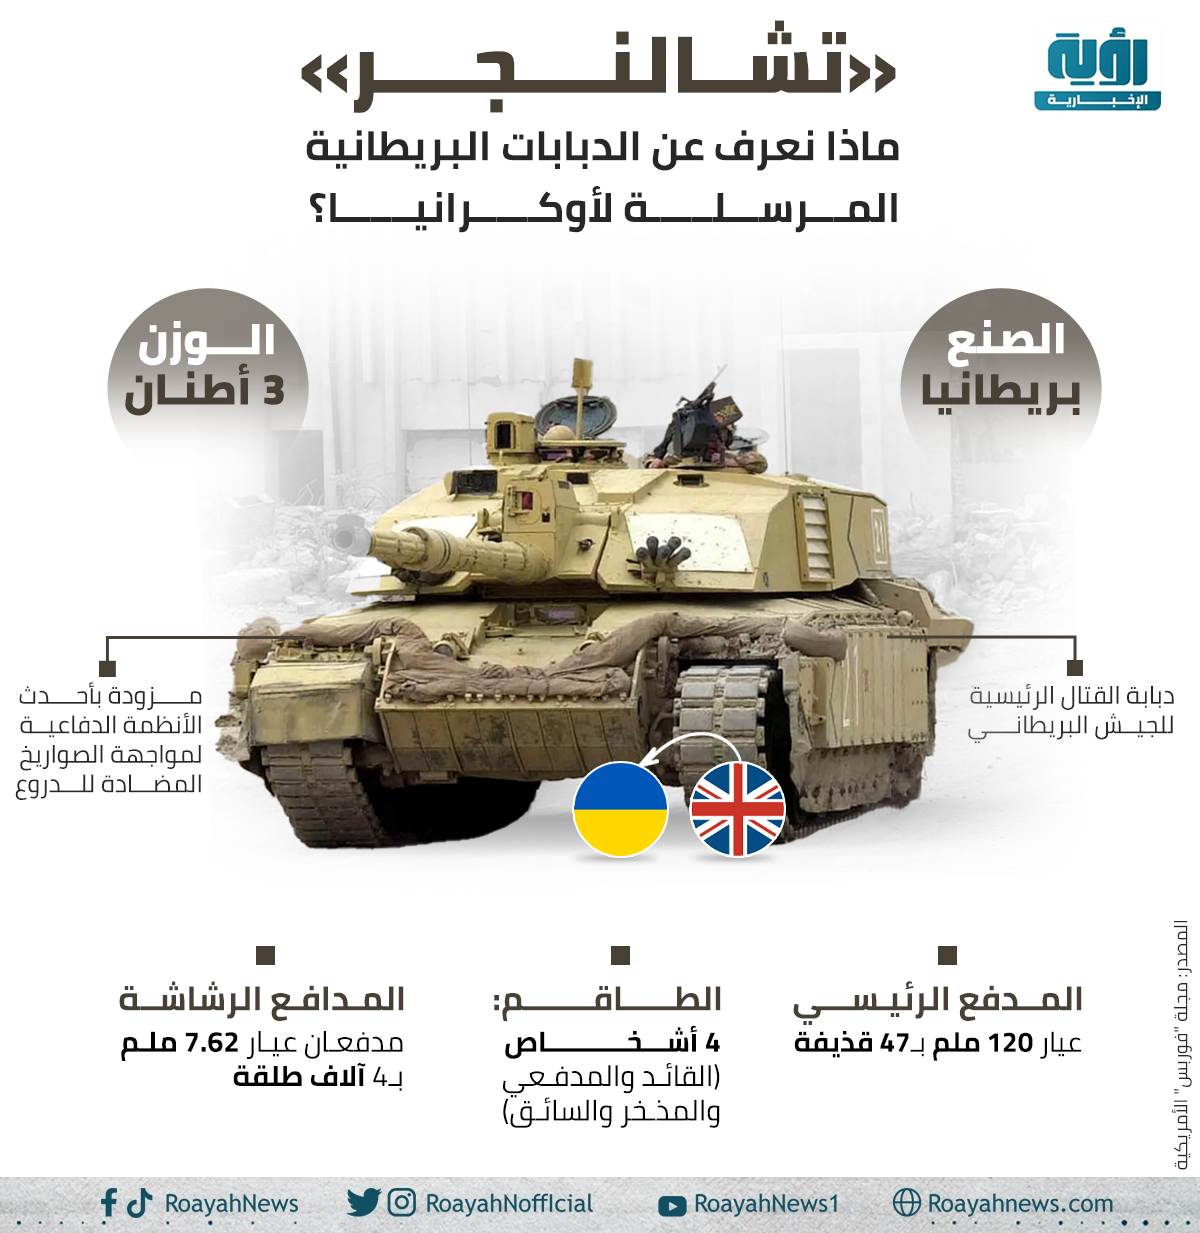 تشالنجر. ماذا نعرف عن الدبابات البريطانية المرسلة لأوكرانيا؟